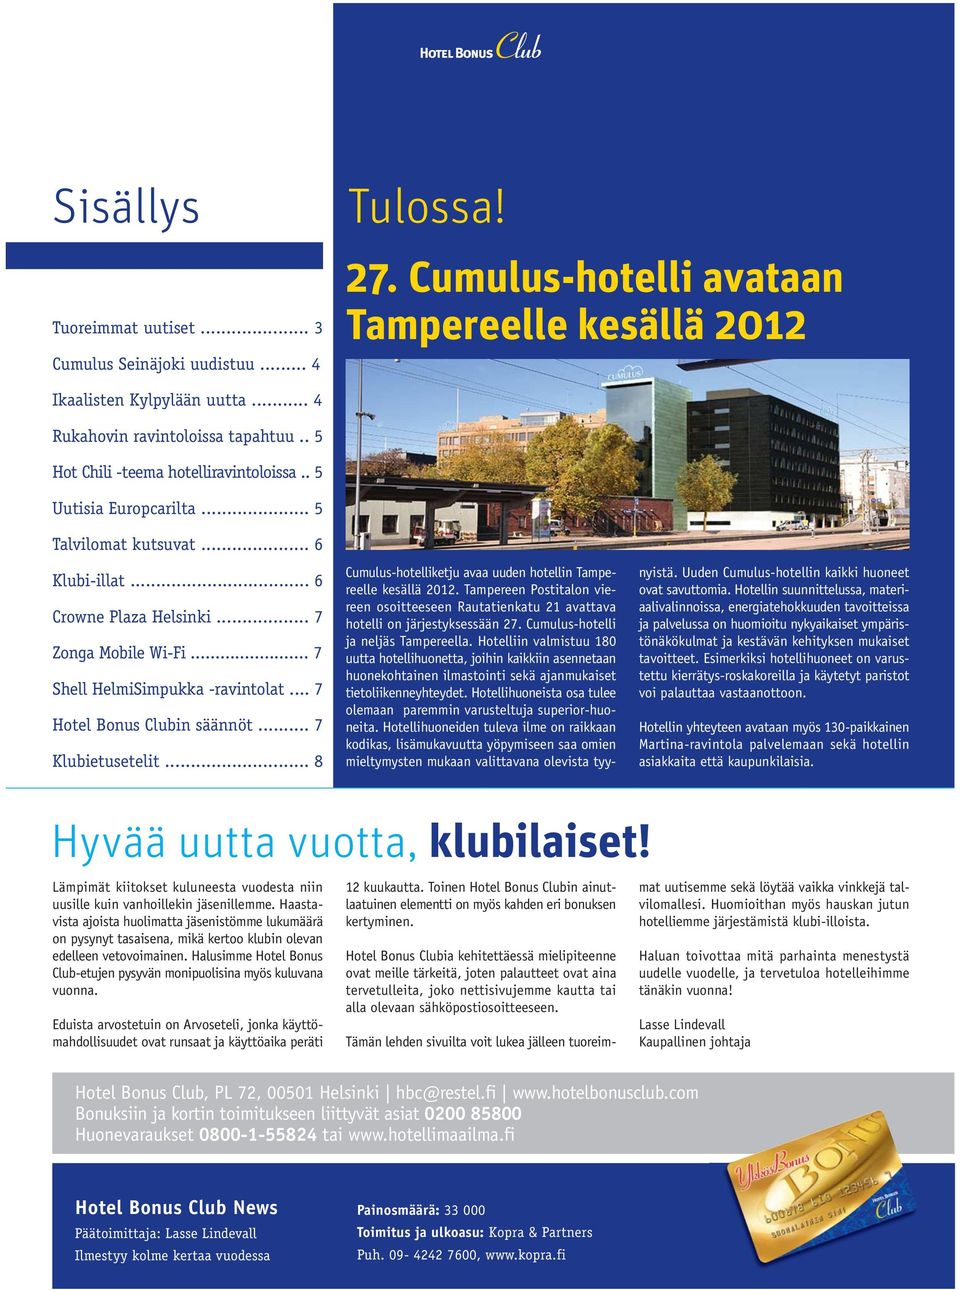 .. 7 Hotel Bonus Clubin säännöt... 7 Klubietusetelit... 8 Cumulus-hotelliketju avaa uuden hotellin Tampereelle kesällä 2012.